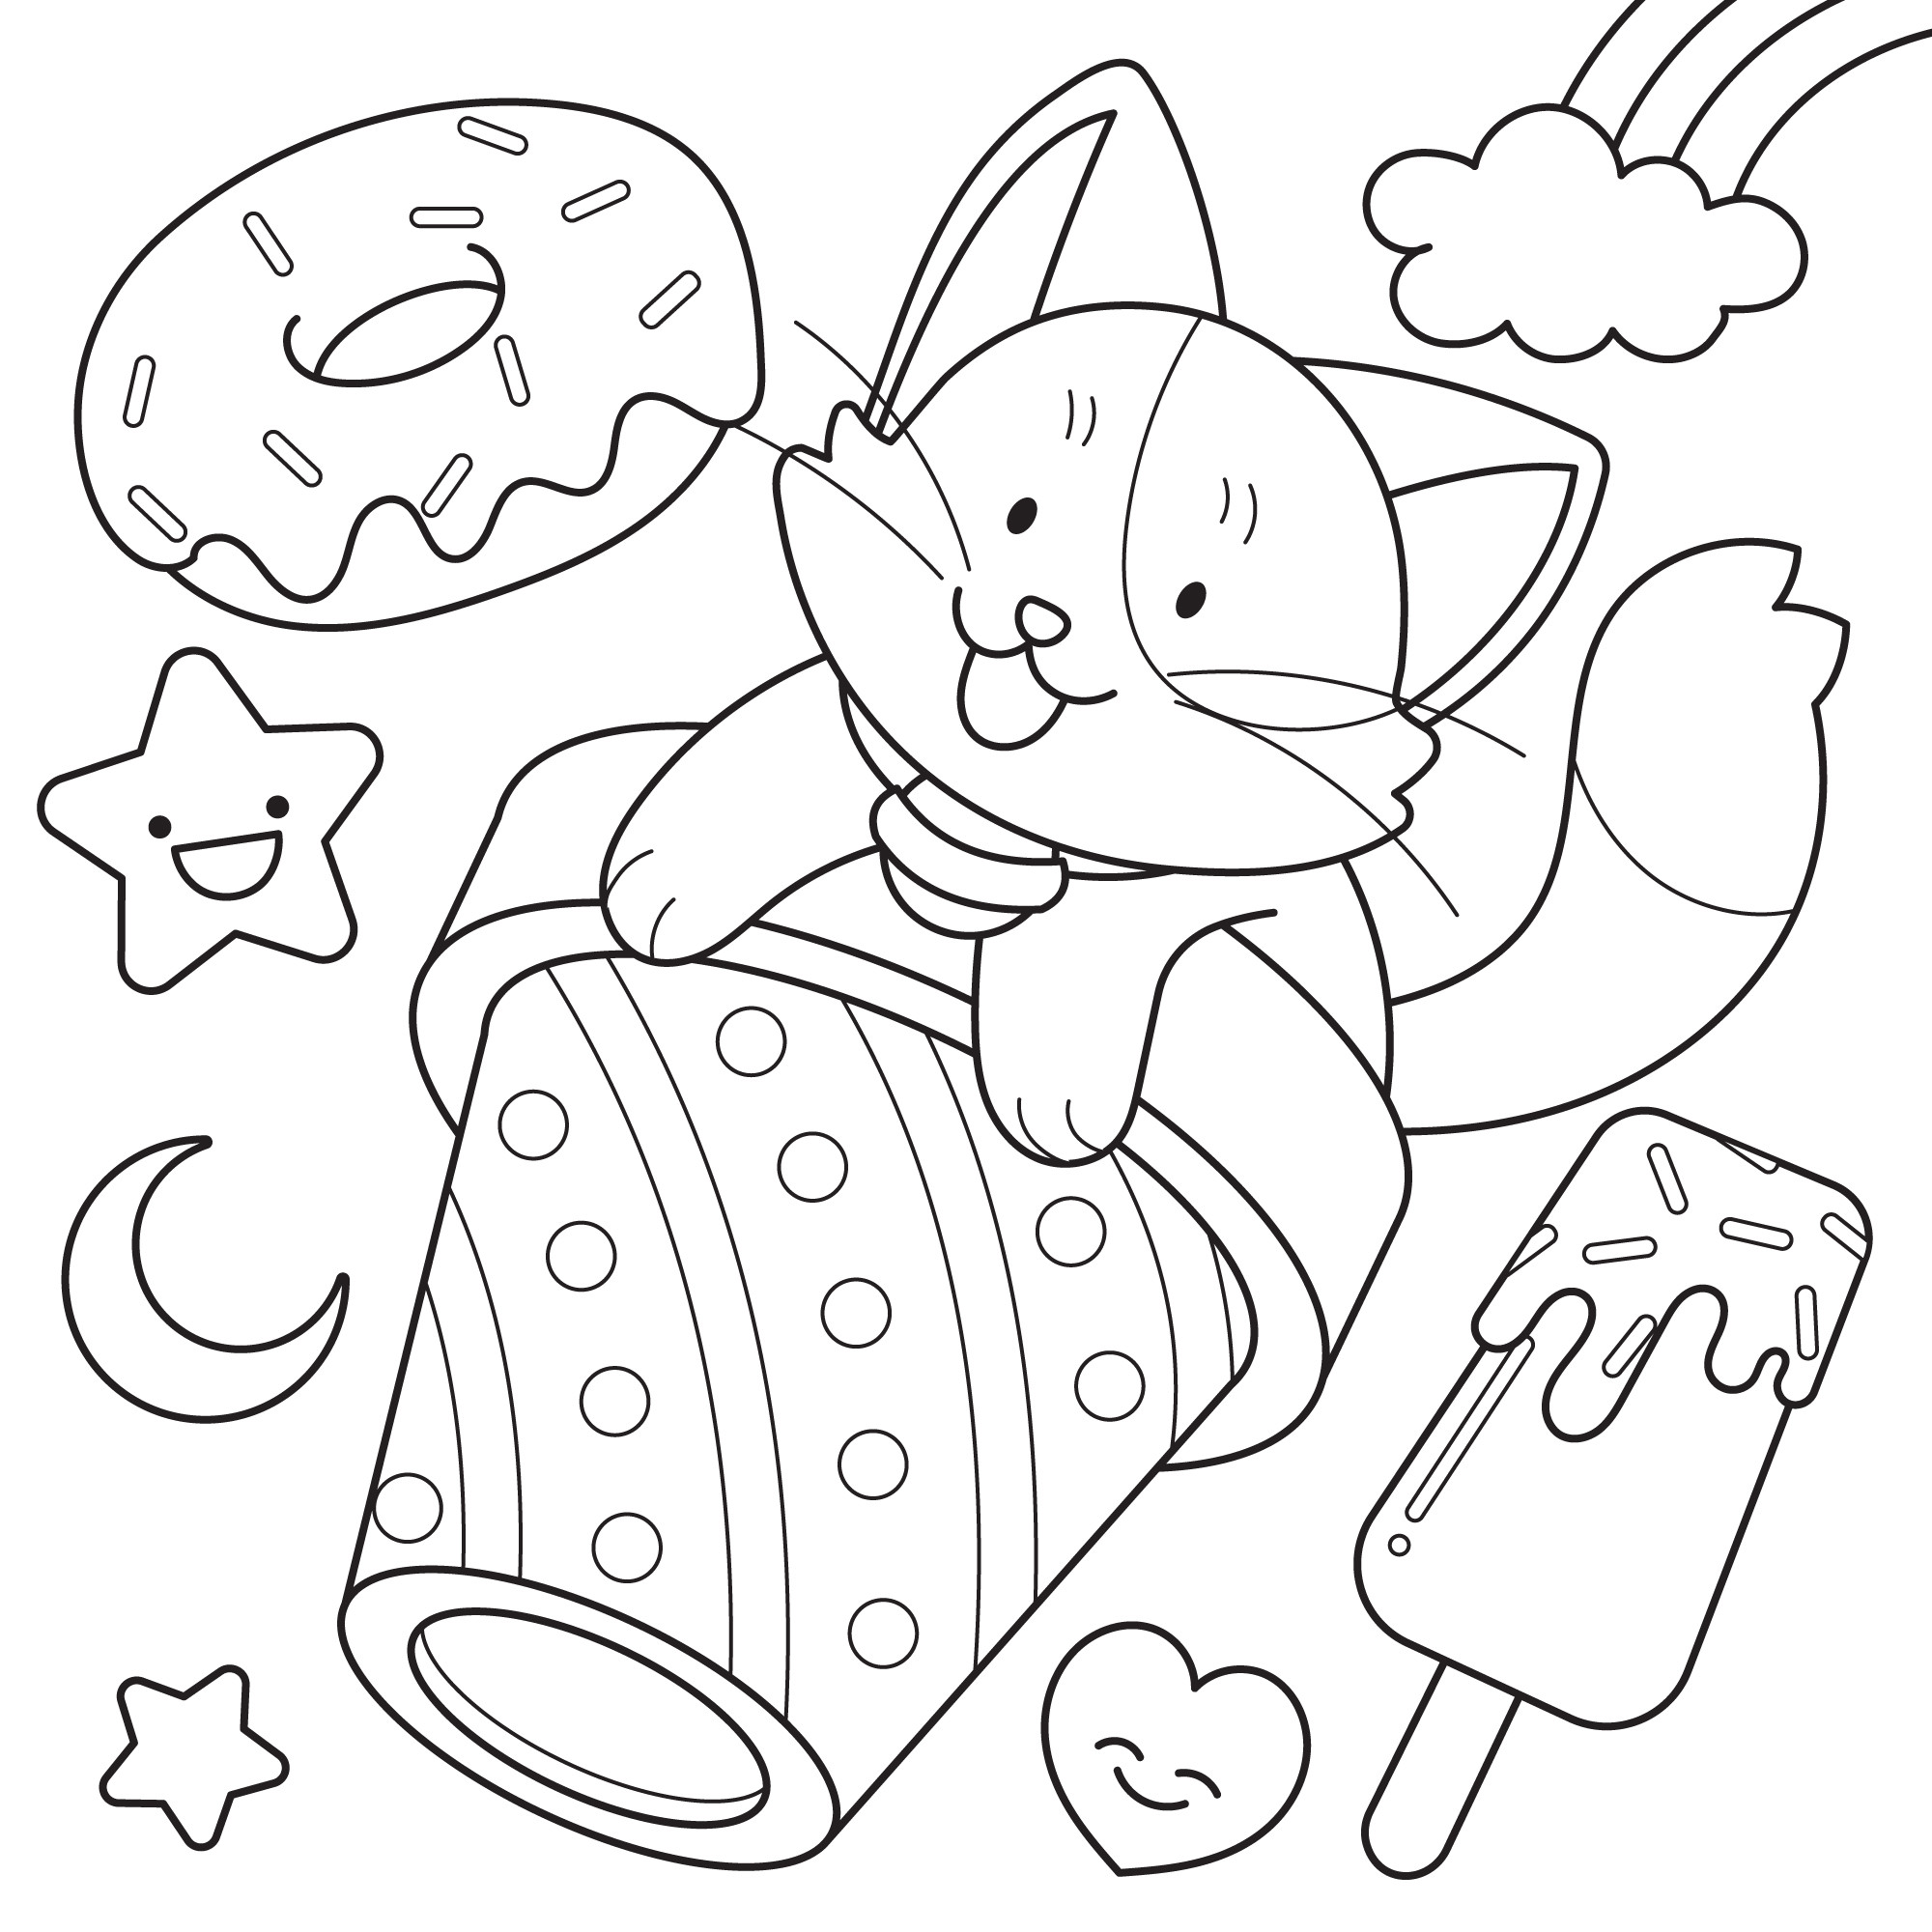 Раскраска для детей: каваи котенок в стакане на фоне пончика и мороженного